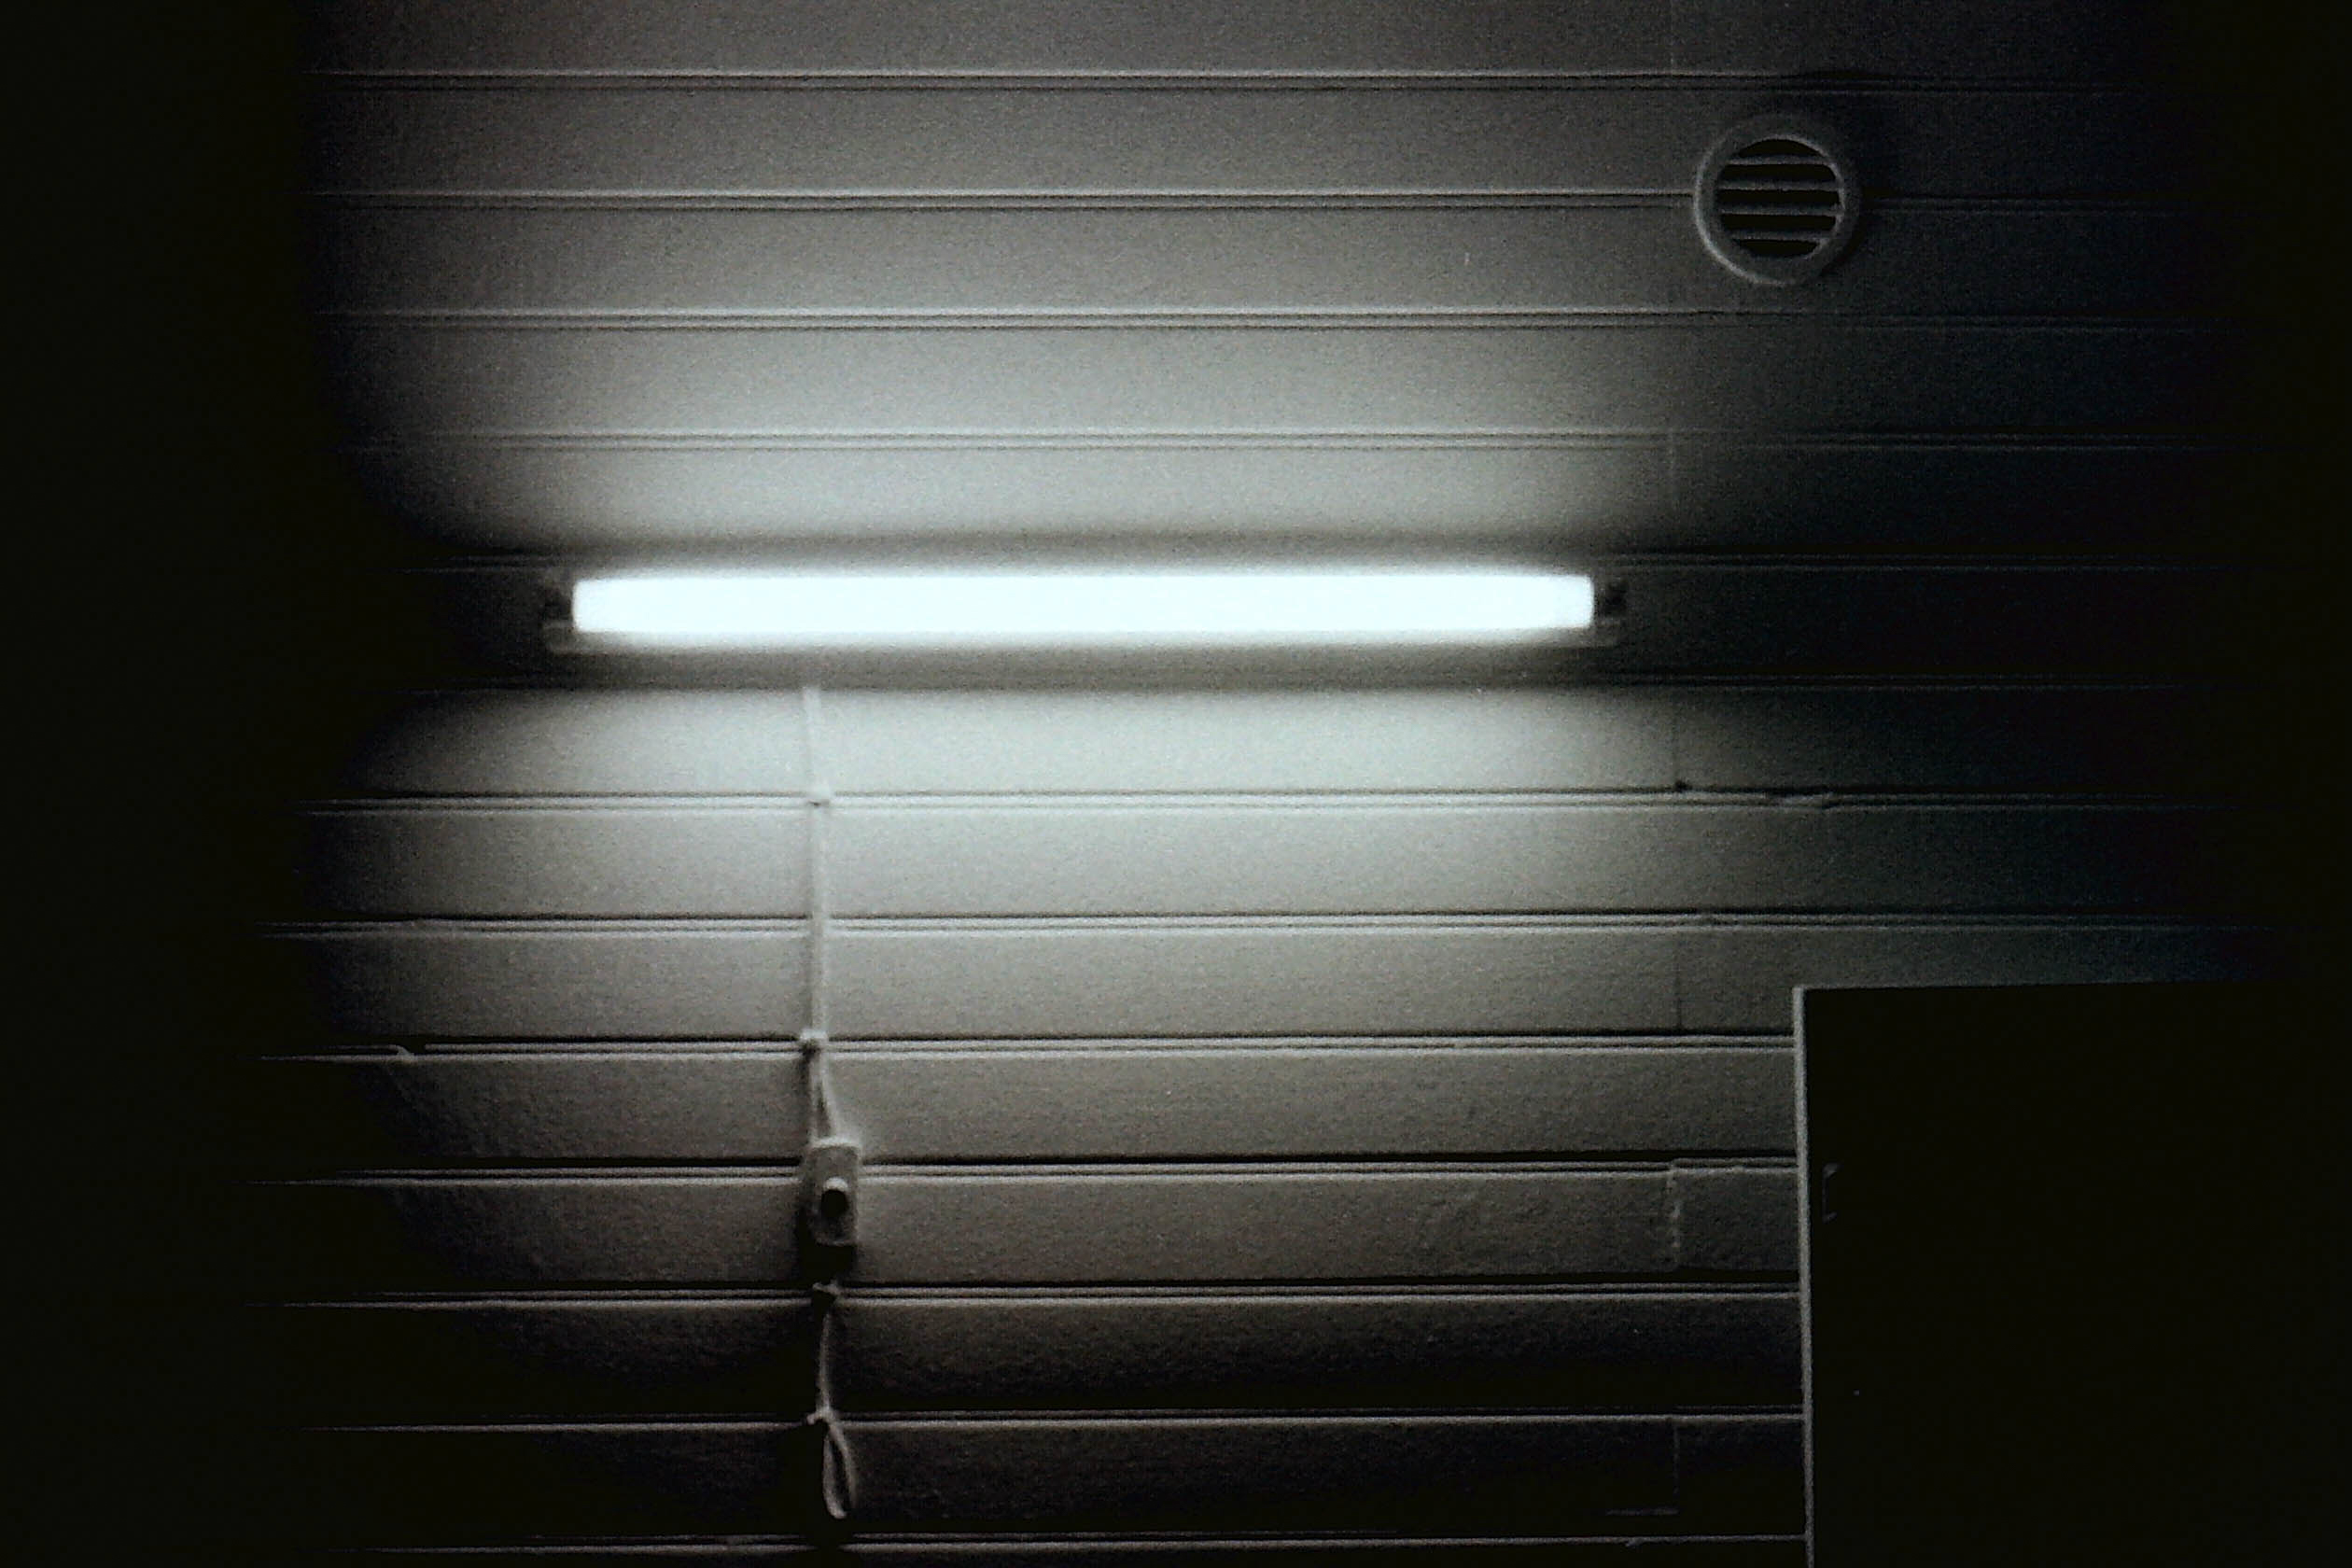 néon sur mur de lambris blanc avec interrupteur, cable et bouche d'aération dans la nuit en noir et blanc